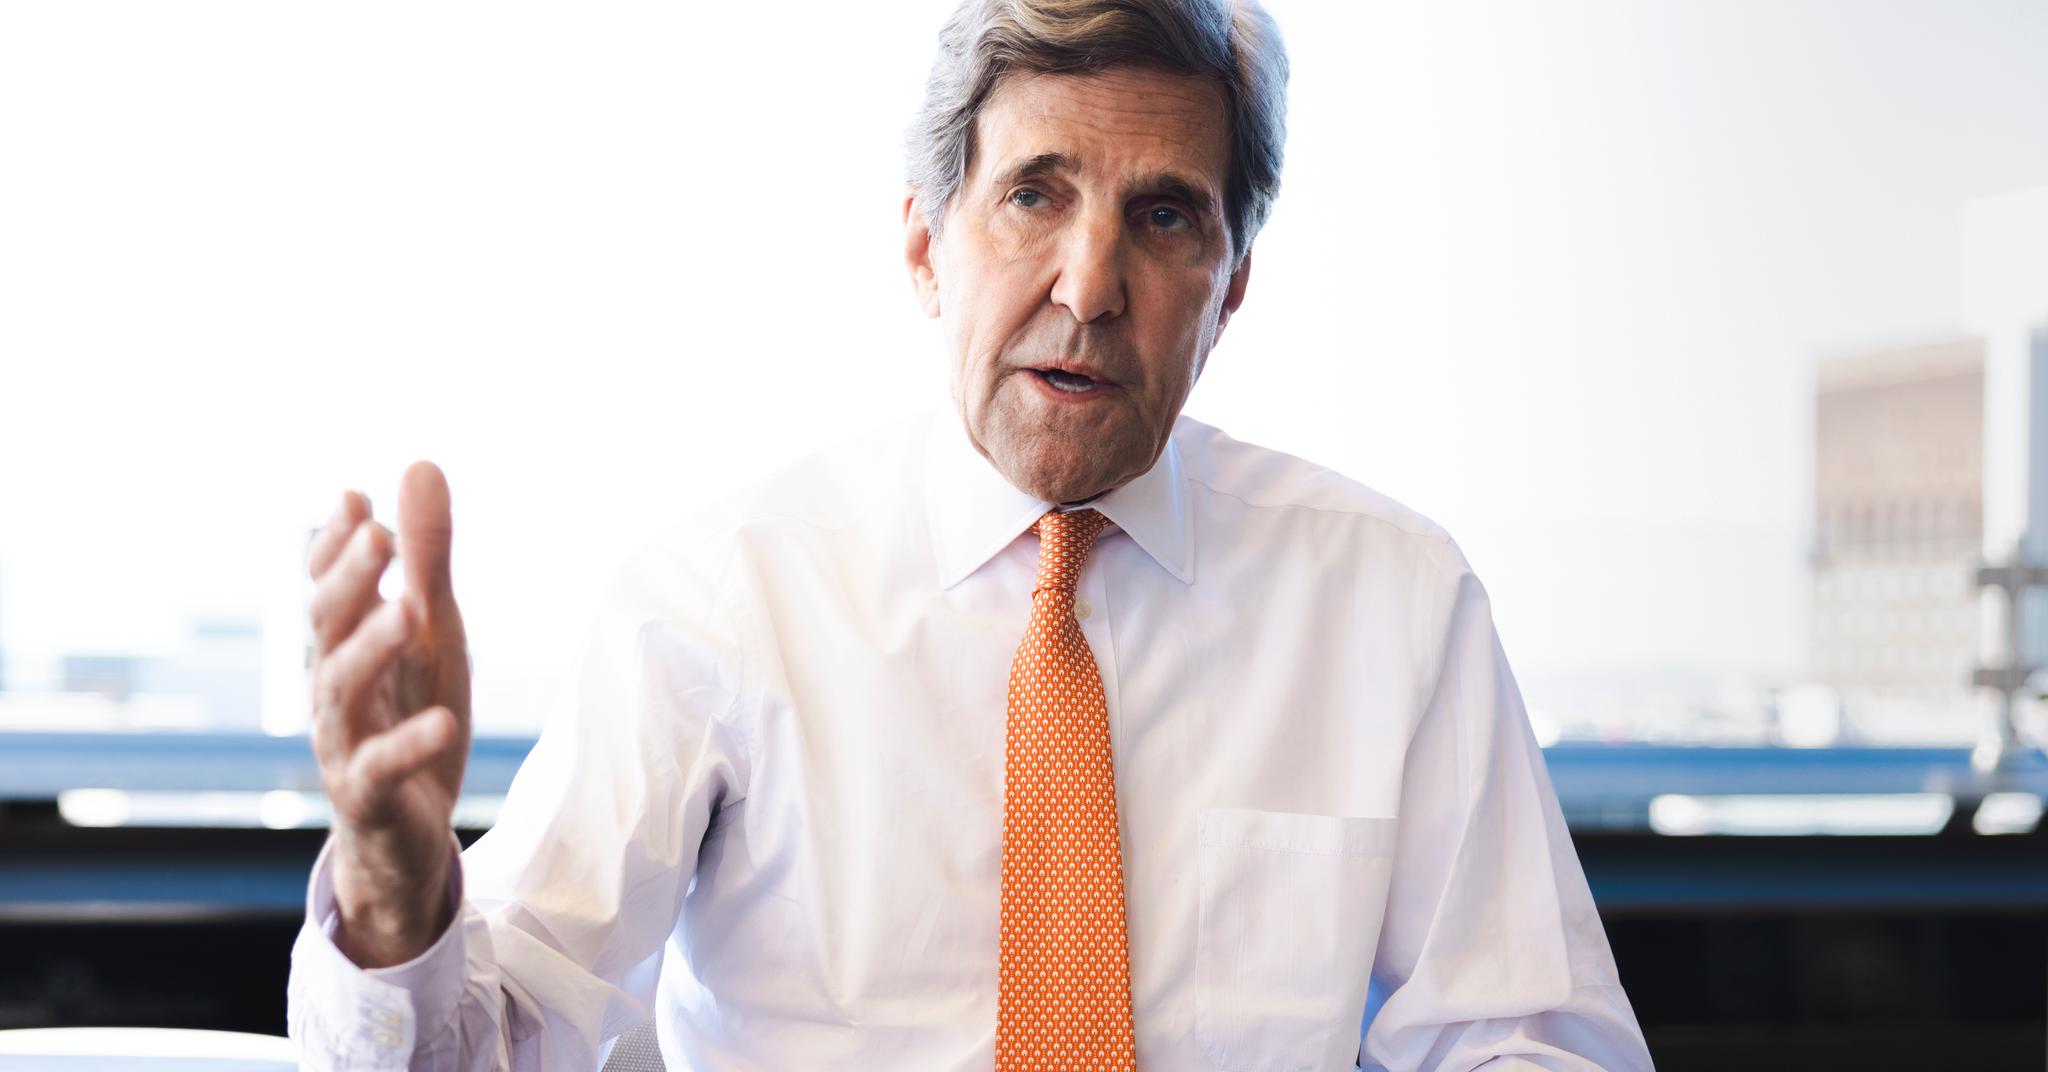 USAs klimautsending John Kerry mener verden må kutte utslipp mye raskere.